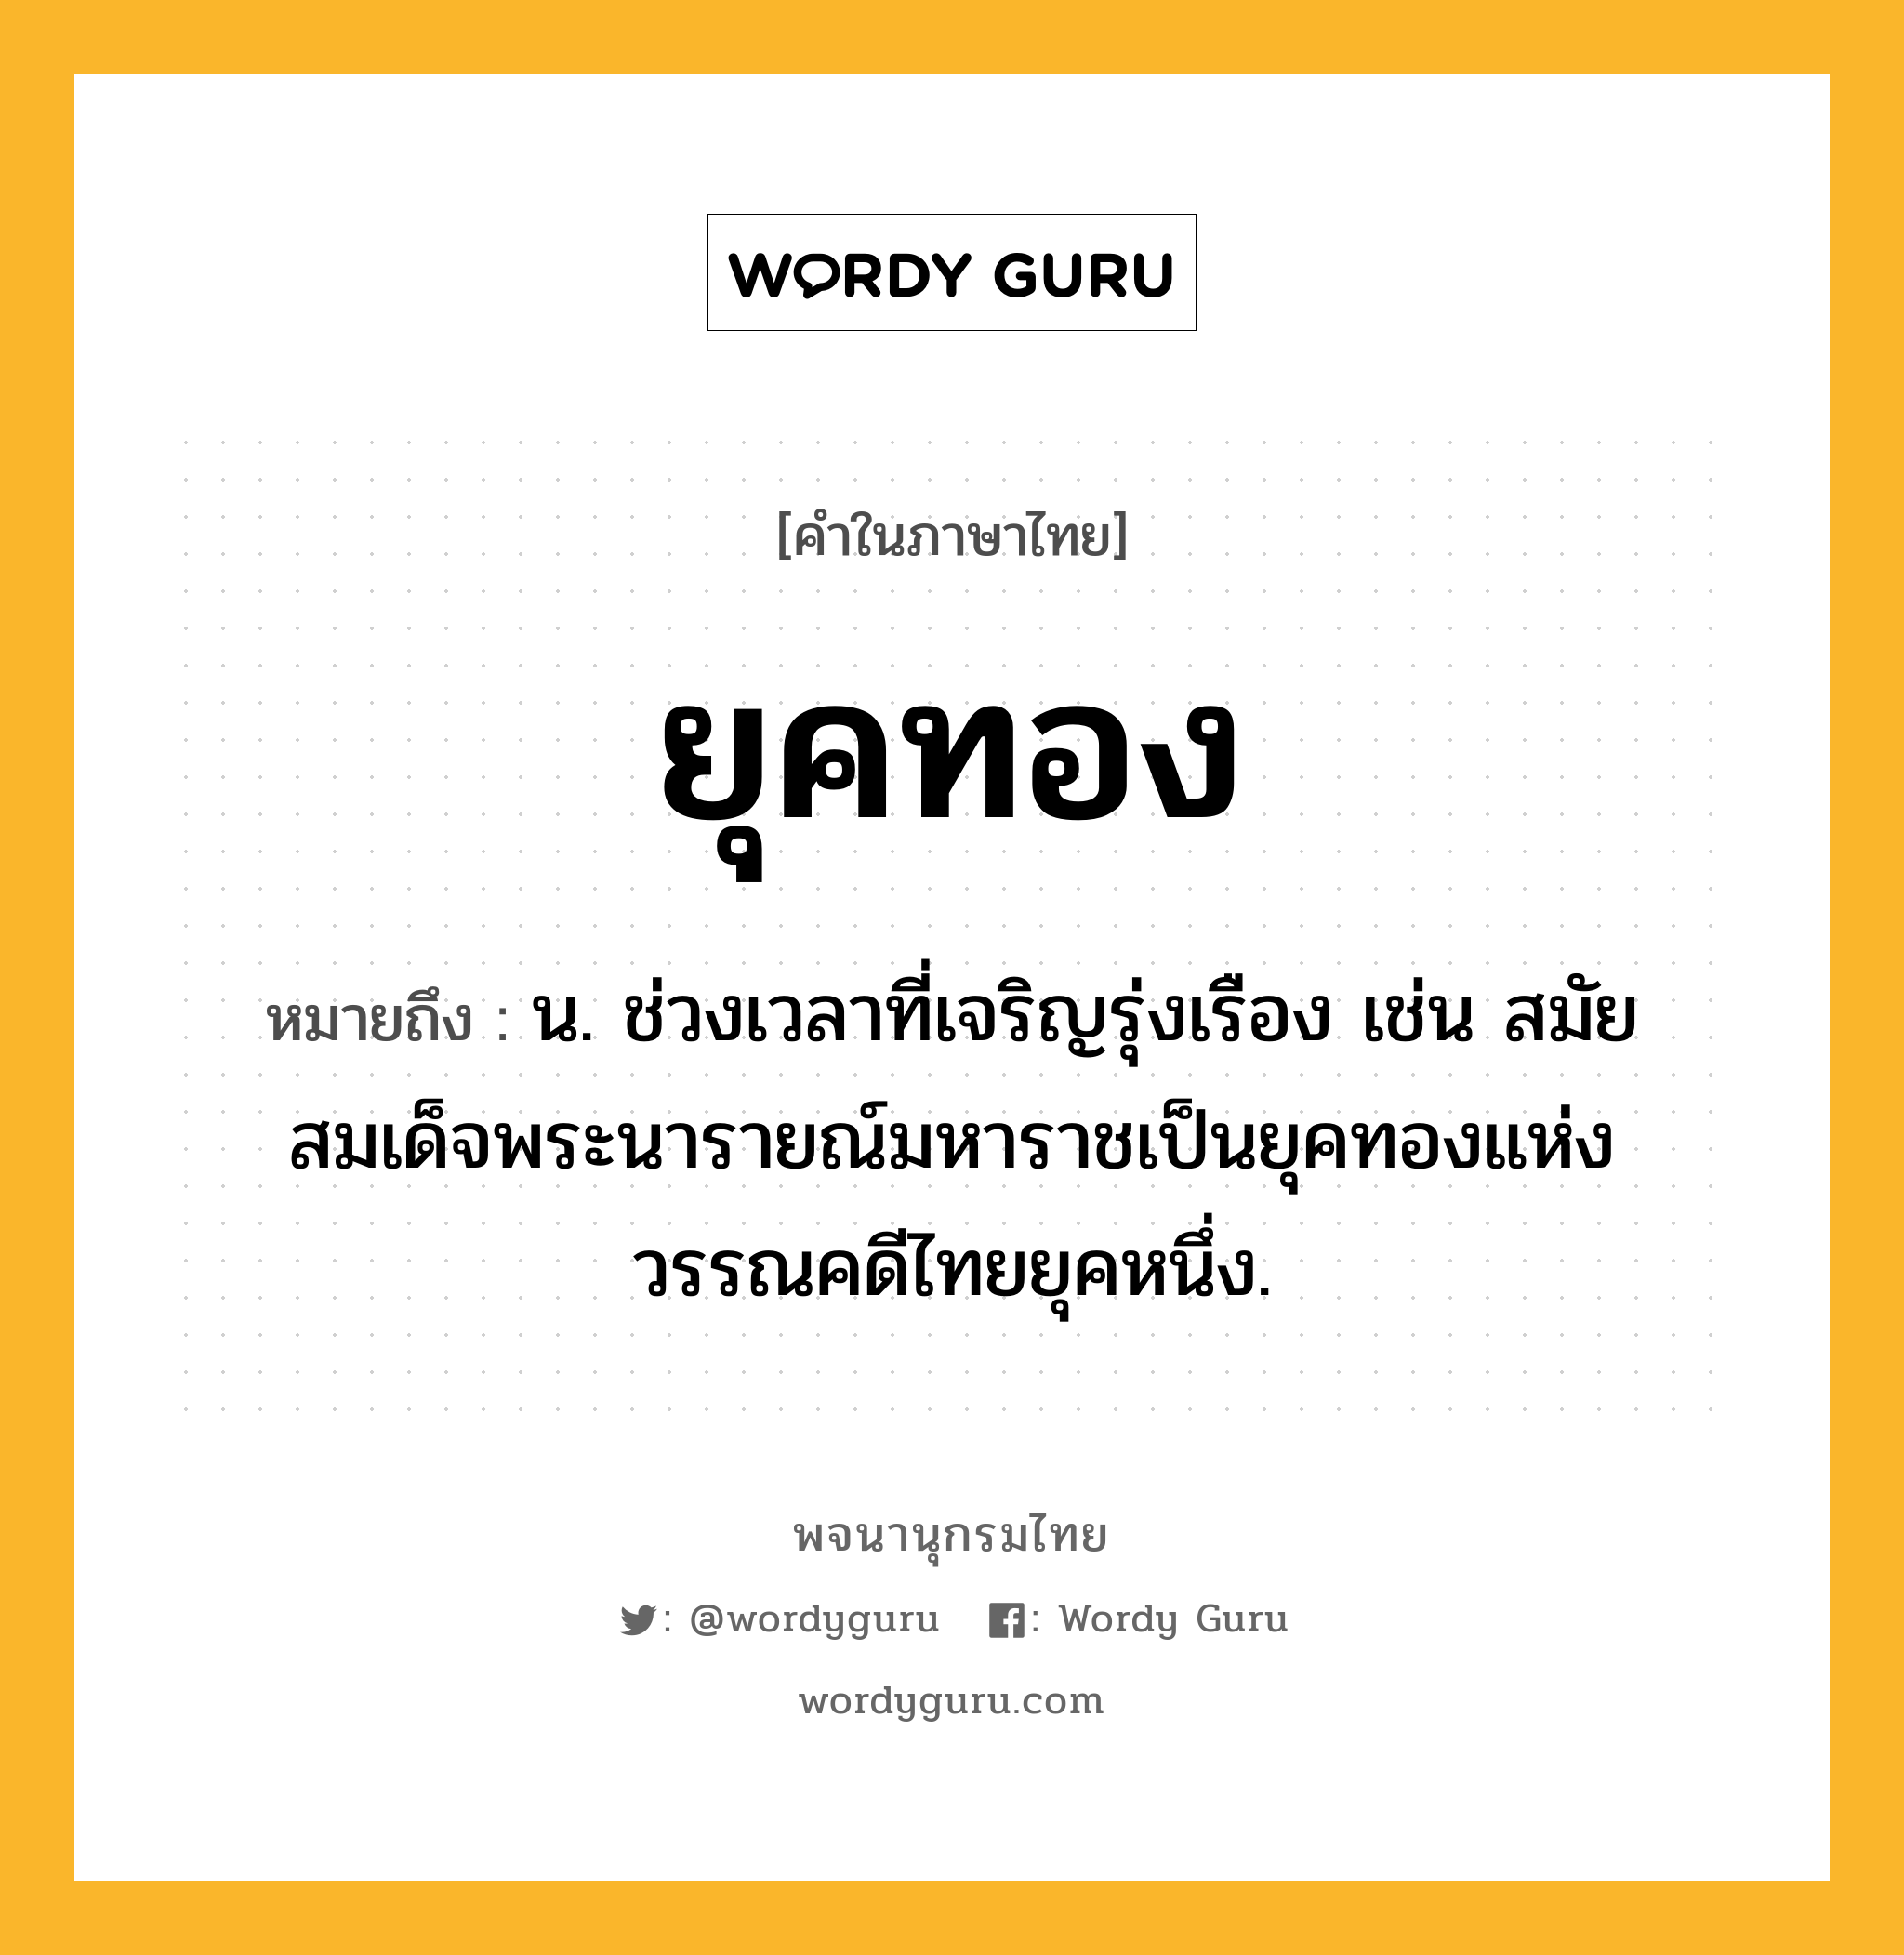 ยุคทอง หมายถึงอะไร?, คำในภาษาไทย ยุคทอง หมายถึง น. ช่วงเวลาที่เจริญรุ่งเรือง เช่น สมัยสมเด็จพระนารายณ์มหาราชเป็นยุคทองแห่งวรรณคดีไทยยุคหนึ่ง.